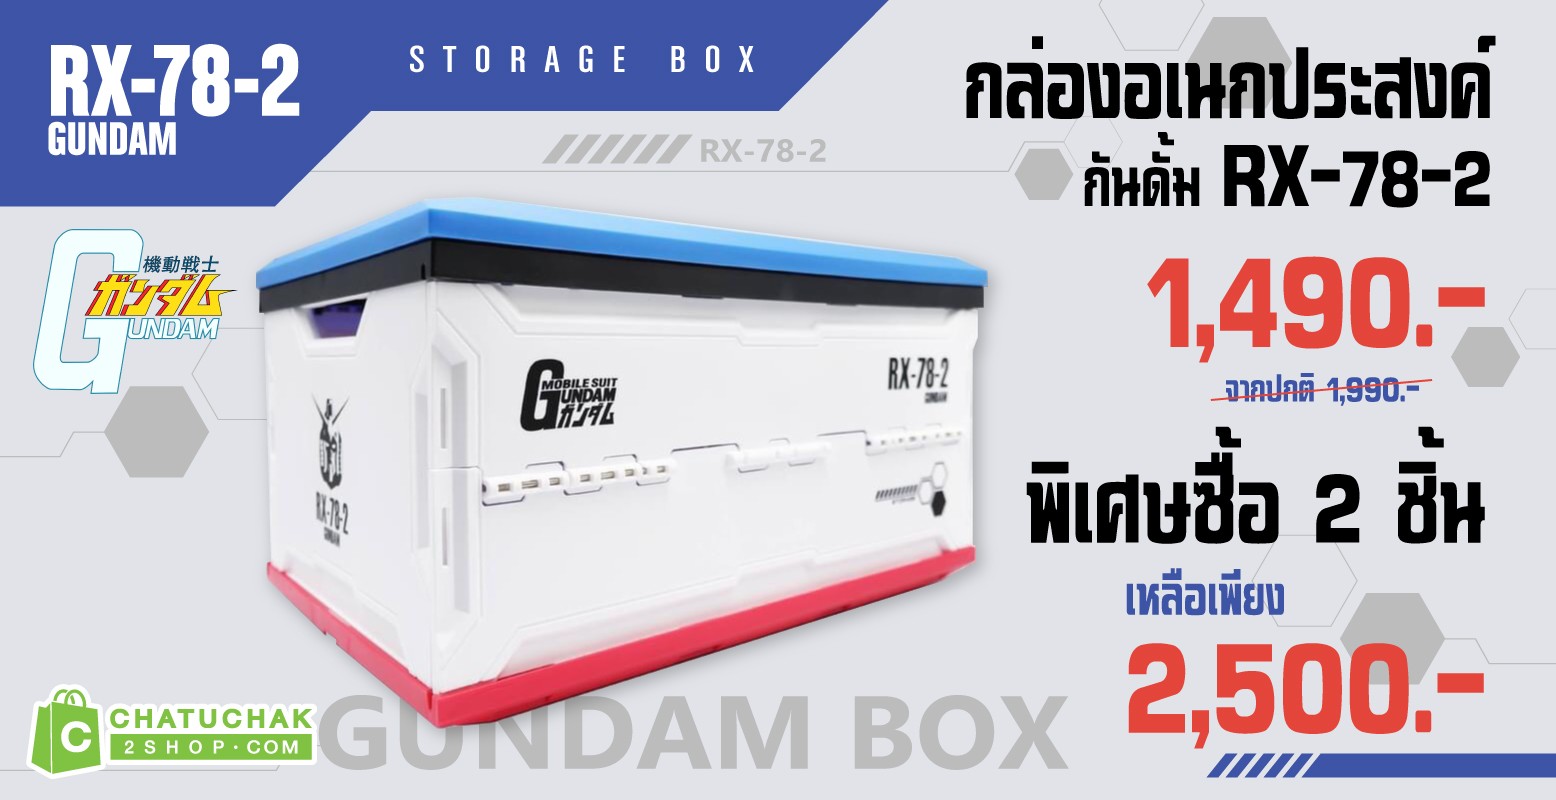 Gundam Storage Box